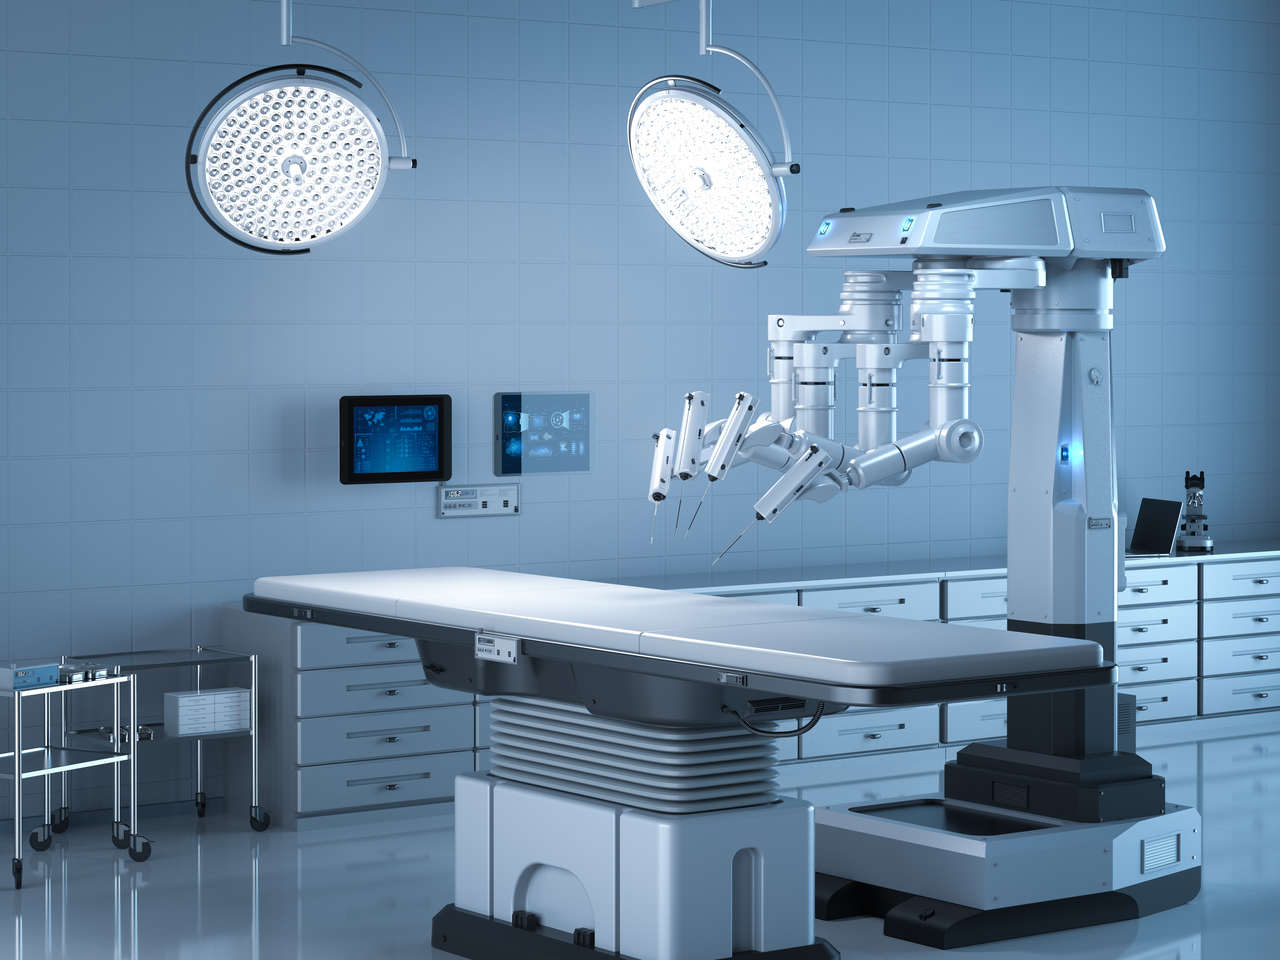 Cirurgia Robótica Goiânia - Como funciona a Cirurgia Robótica e quais os riscos?